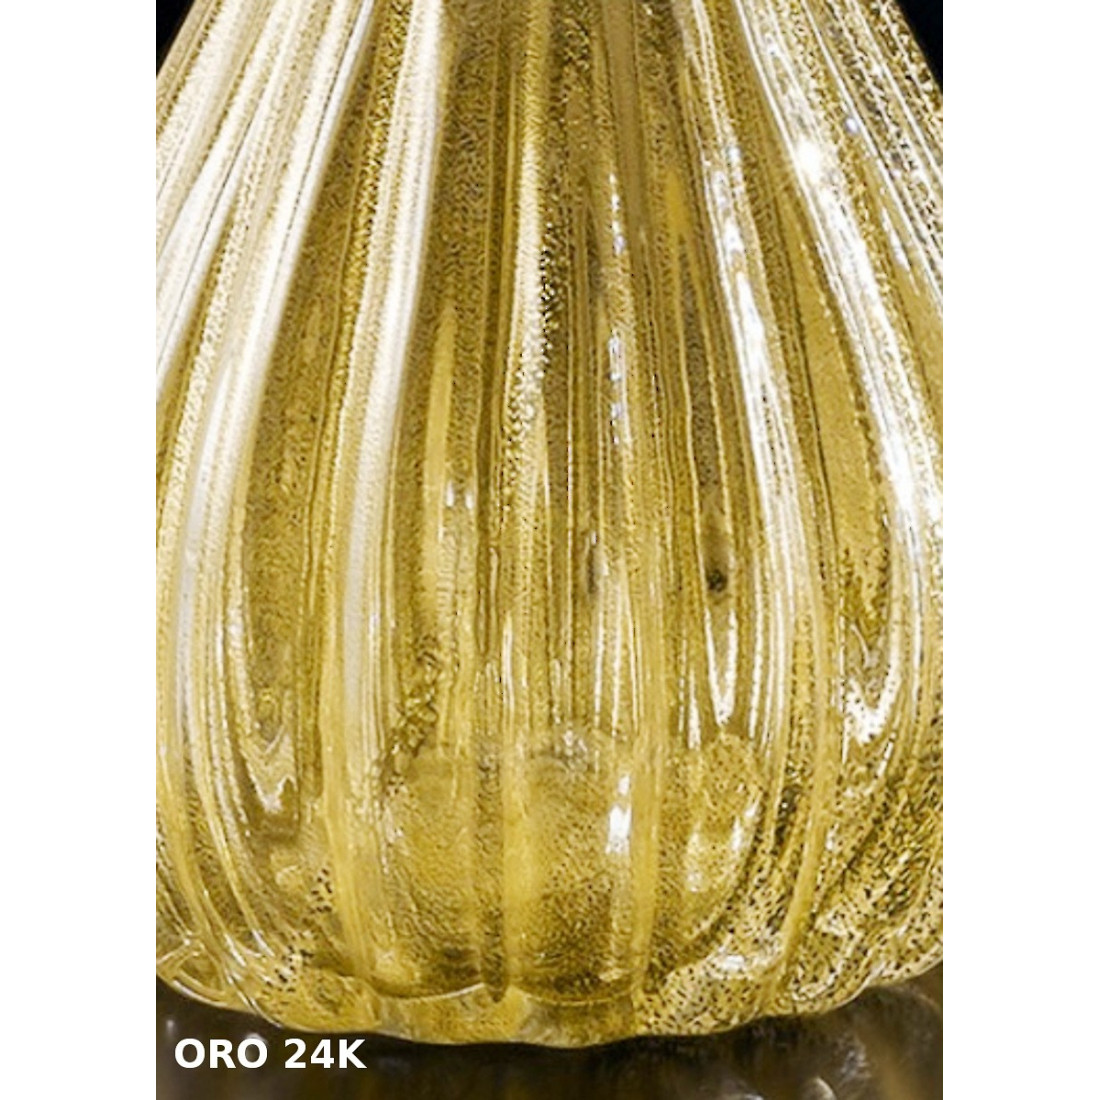 Abat-jour SY-SCRIGNO 1395 BASE piccola vetro murano veneziano colorato lampada tavolo classica